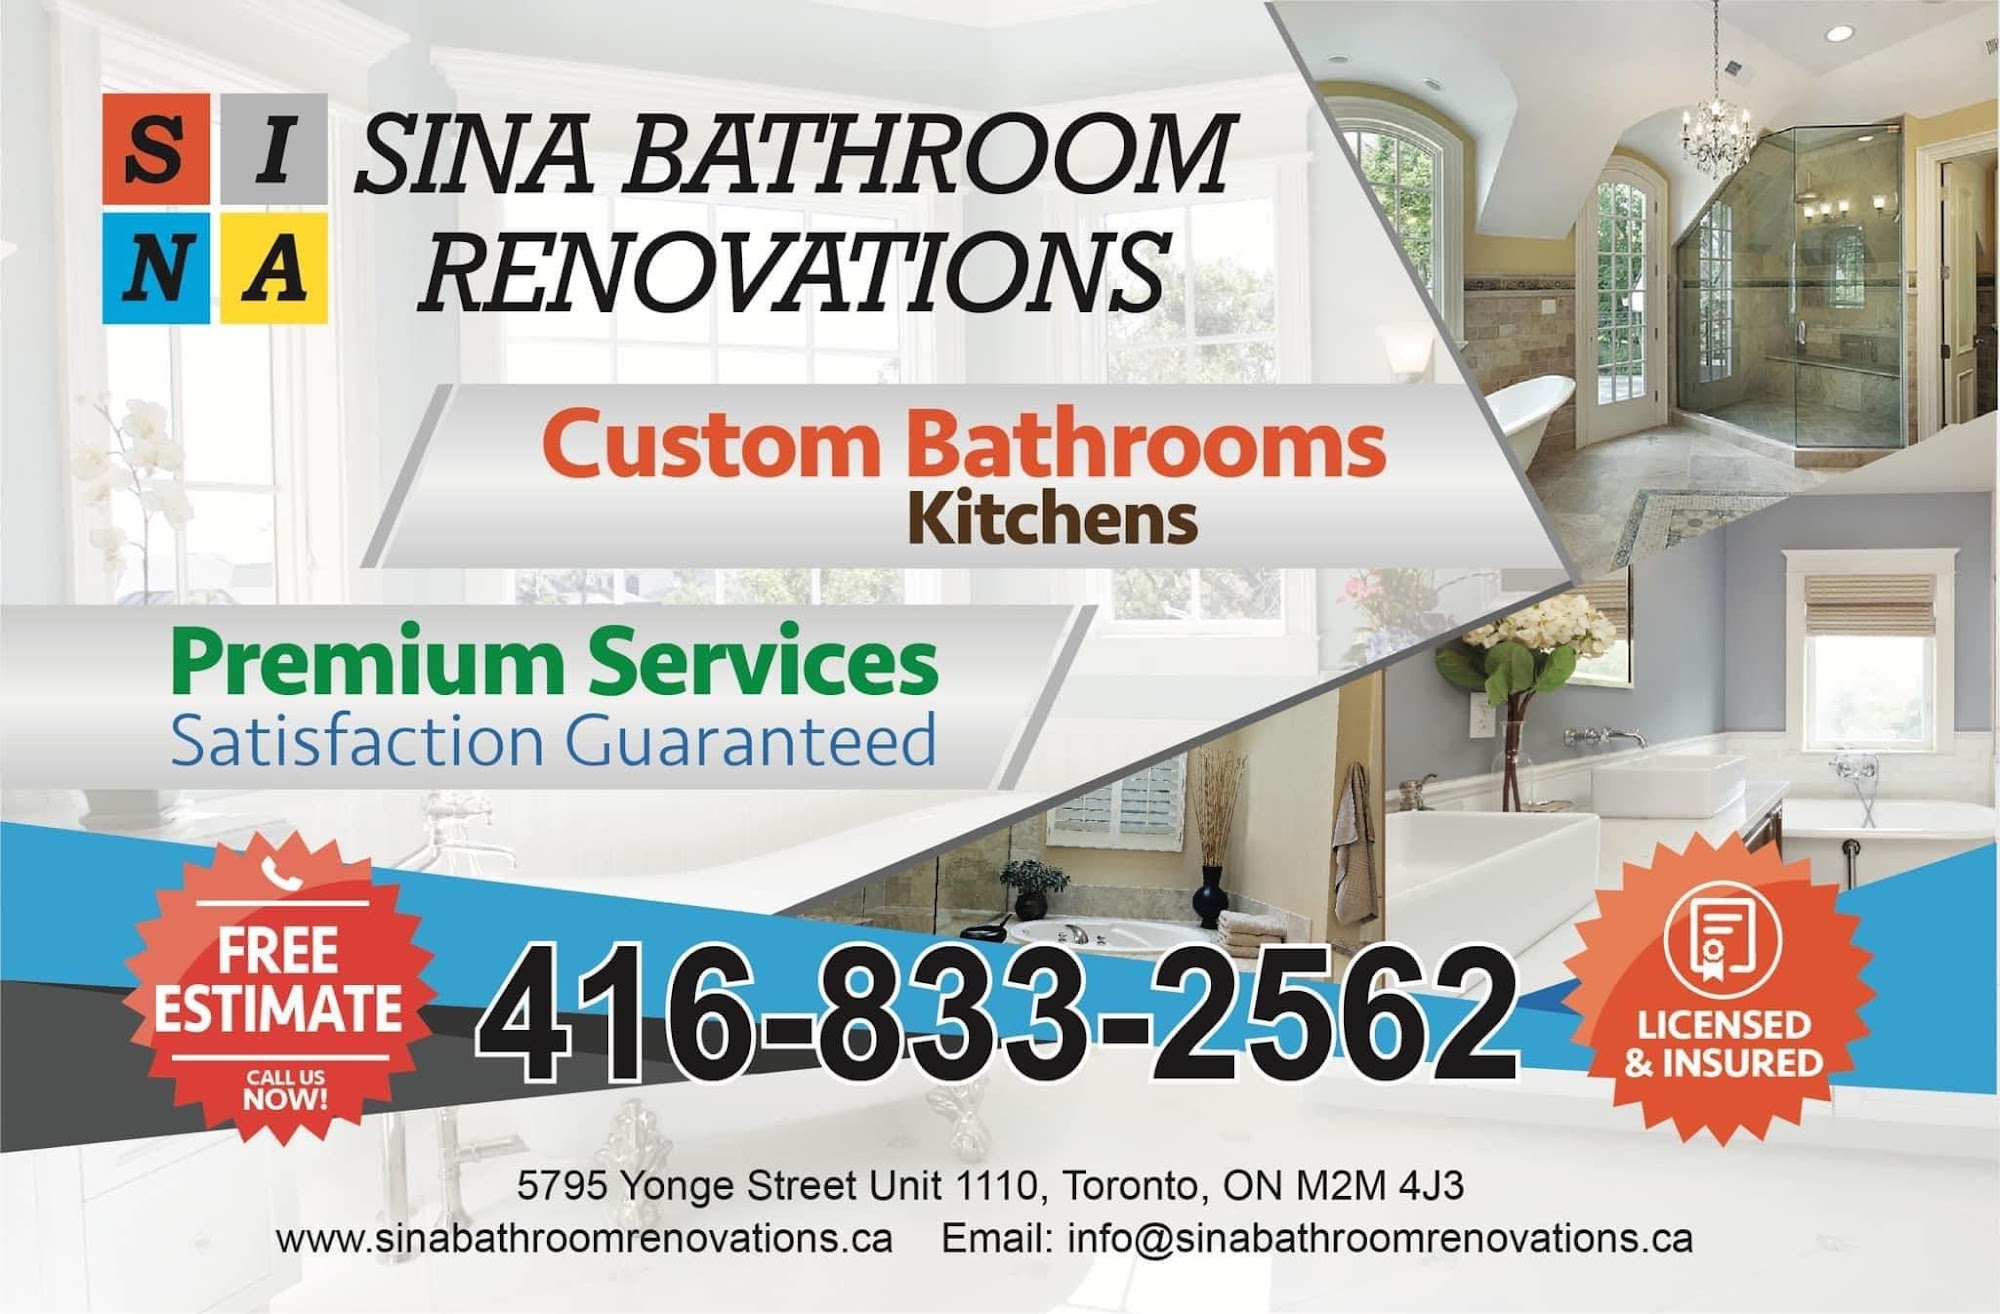 Sina Bathroom Renovations Company